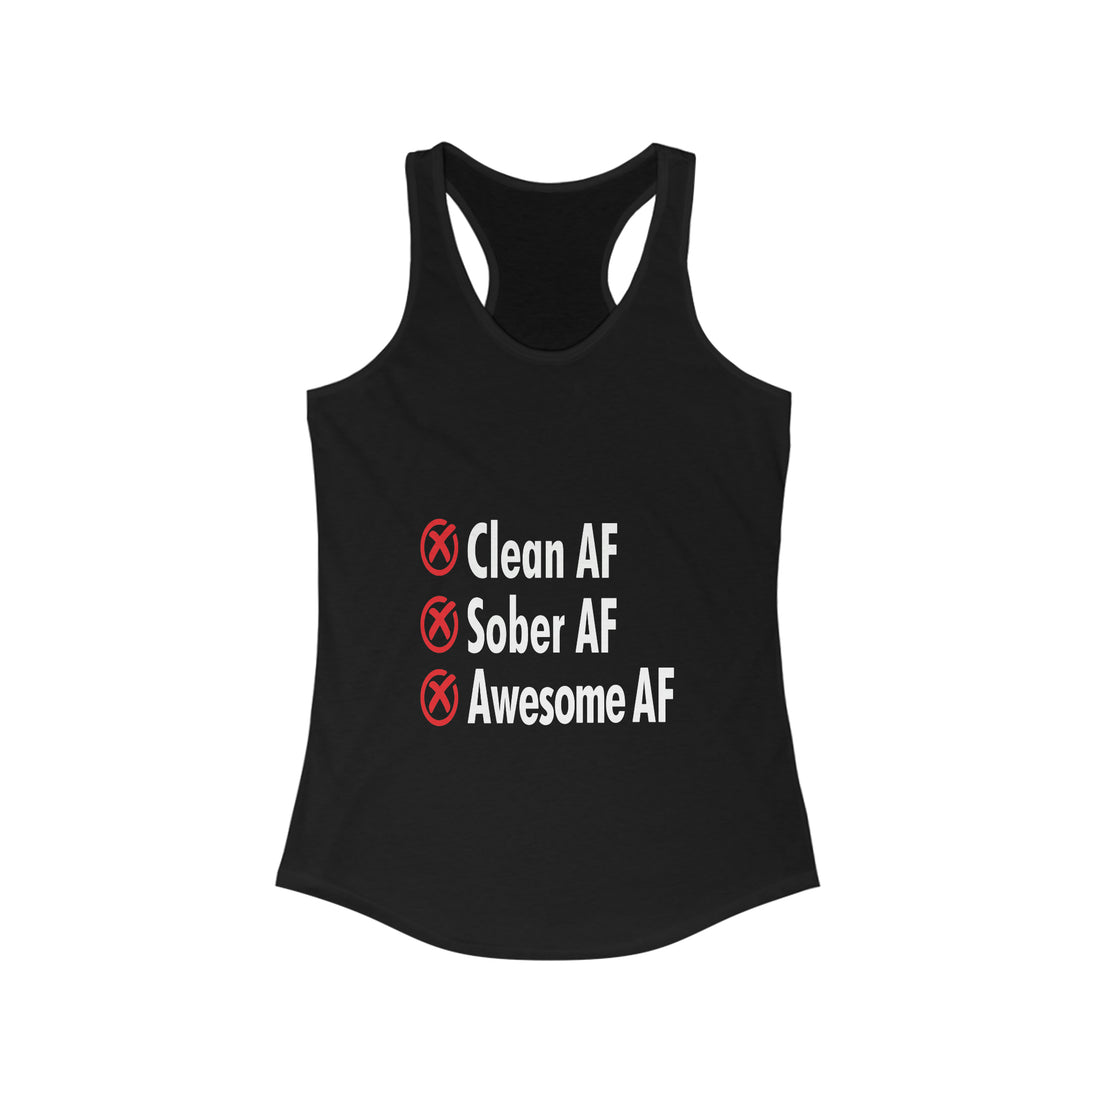 Clean AF Sober AF Awesome AF - Racerback Tank Top